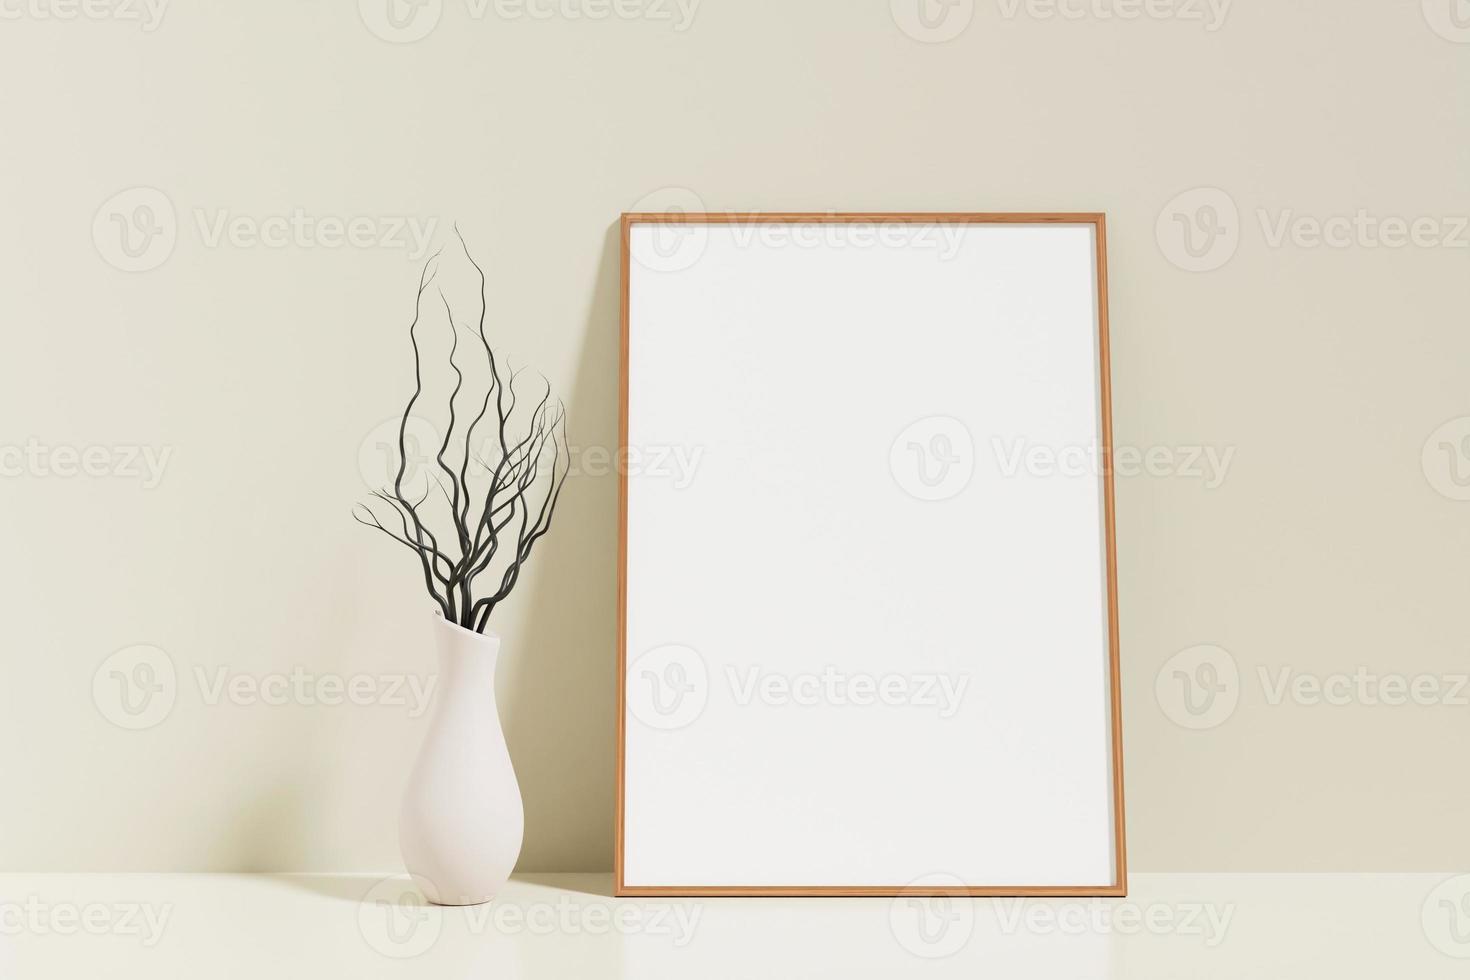 cartaz de madeira vertical minimalista e limpo ou maquete de moldura no chão encostado na parede da sala com vaso foto